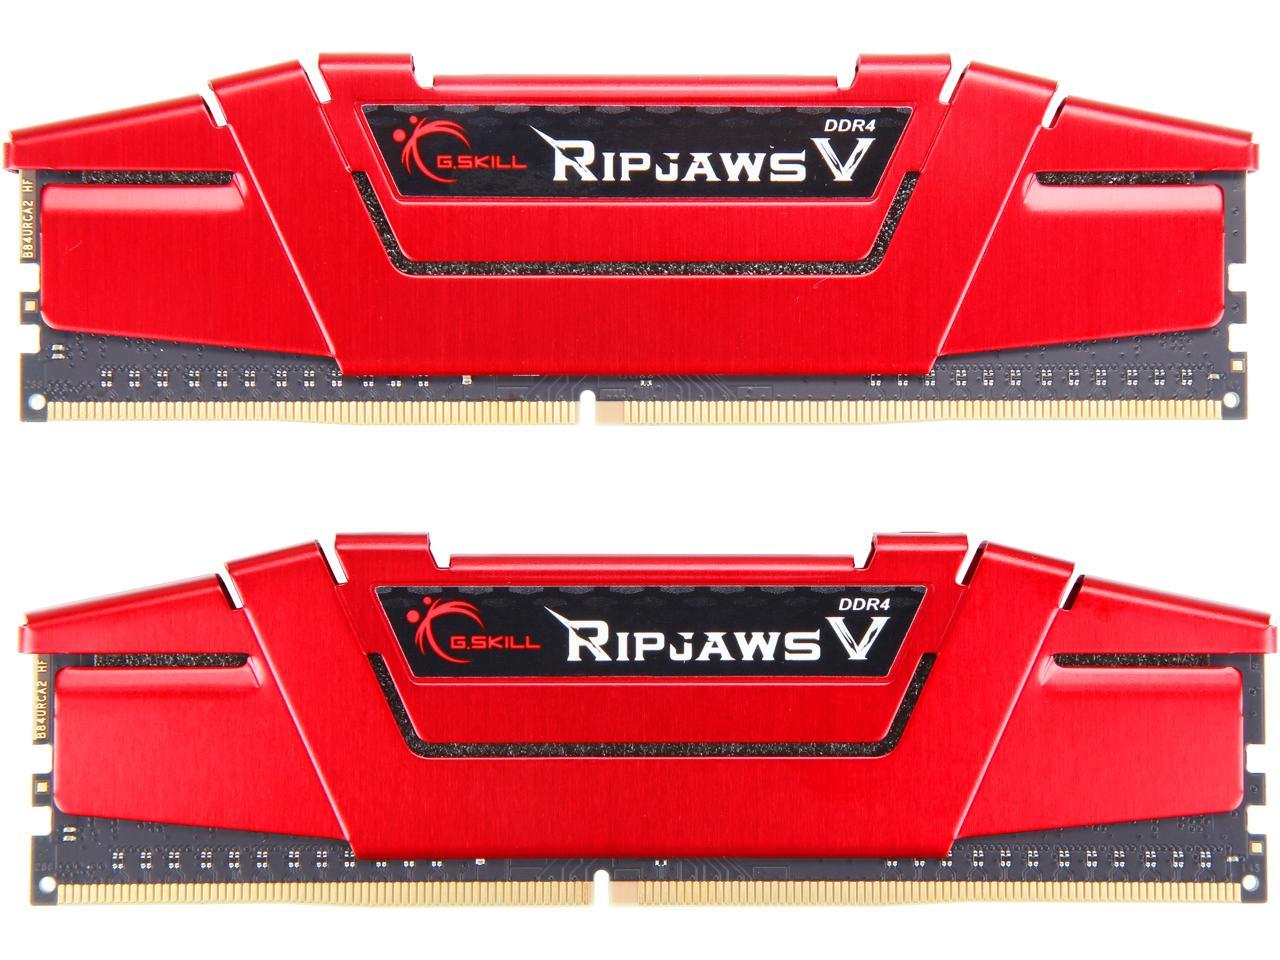 G.SKILL Ripjaws V Series 16GB (2 x 8GB) DDR4 3000 (PC4 24000) Desktop  Memory Model F4-3000C16D-16GVRB